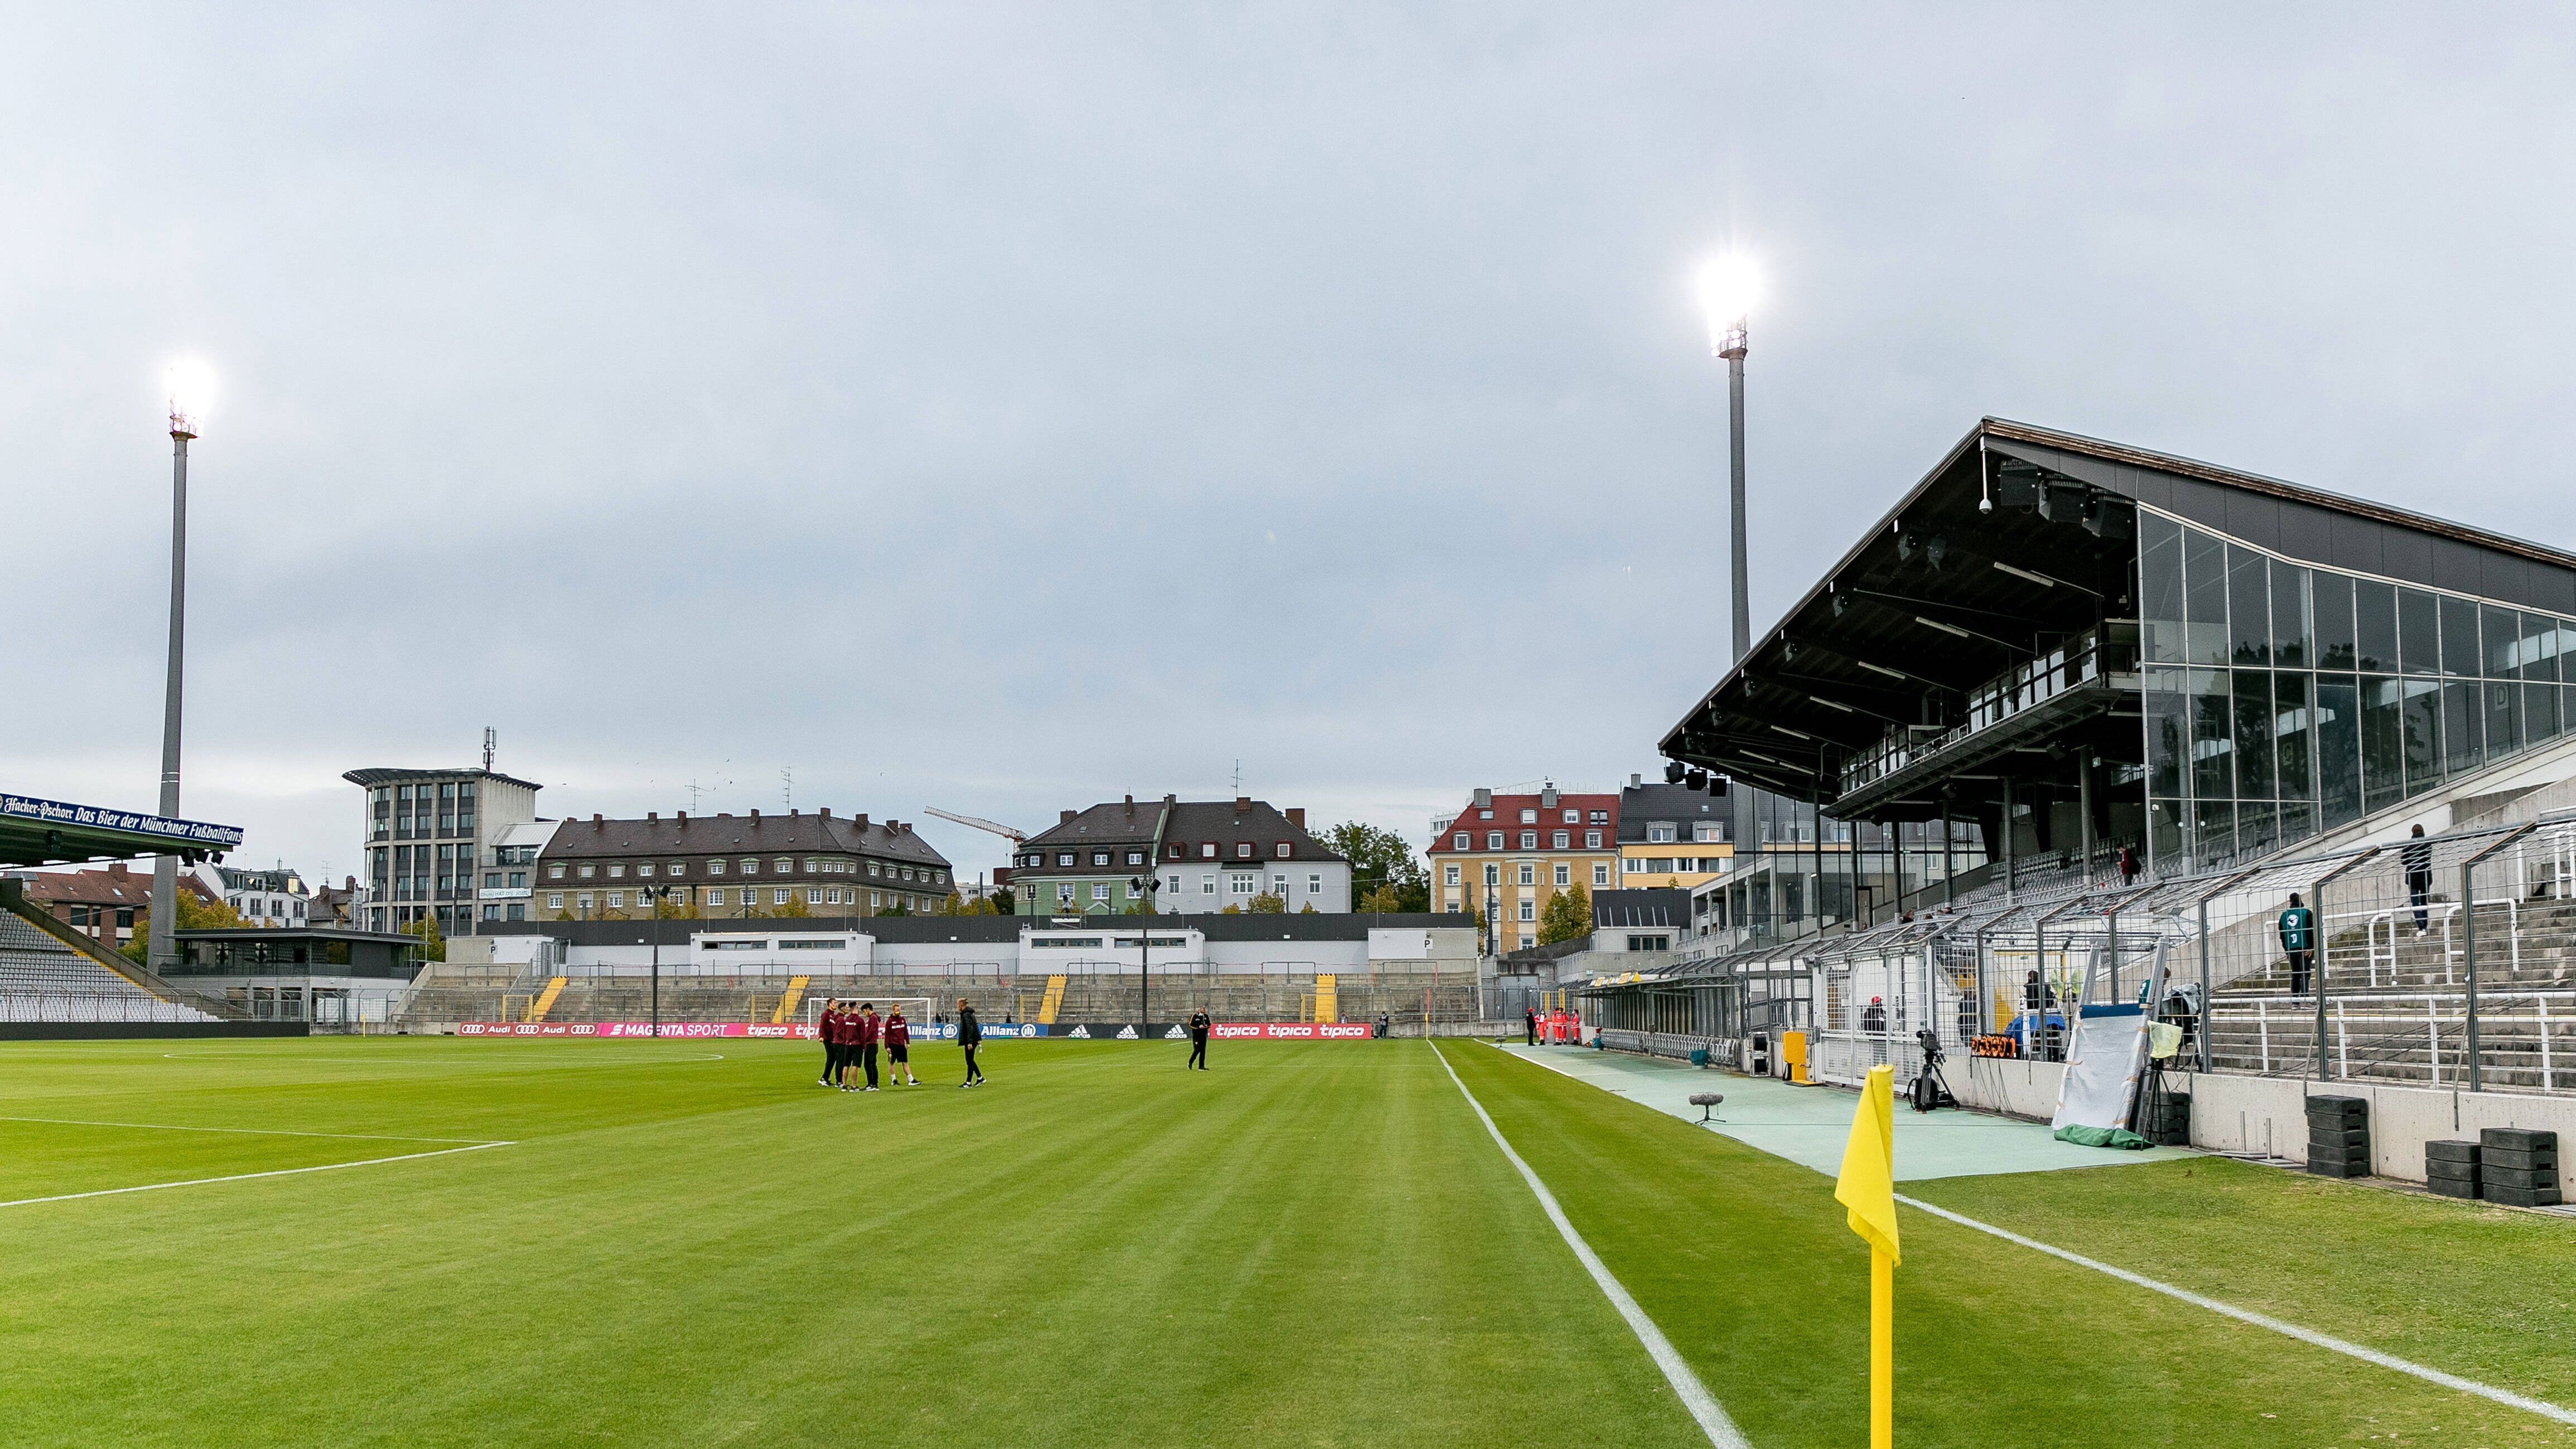 
                <strong>TSV 1860 München - SV Darmstadt 98</strong><br>
                Anstoß: Freitag, 6. August, 20:45 UhrStadion: Stadion an der Grünwalder StraßeZuschauer erlaubt: 4.158
              